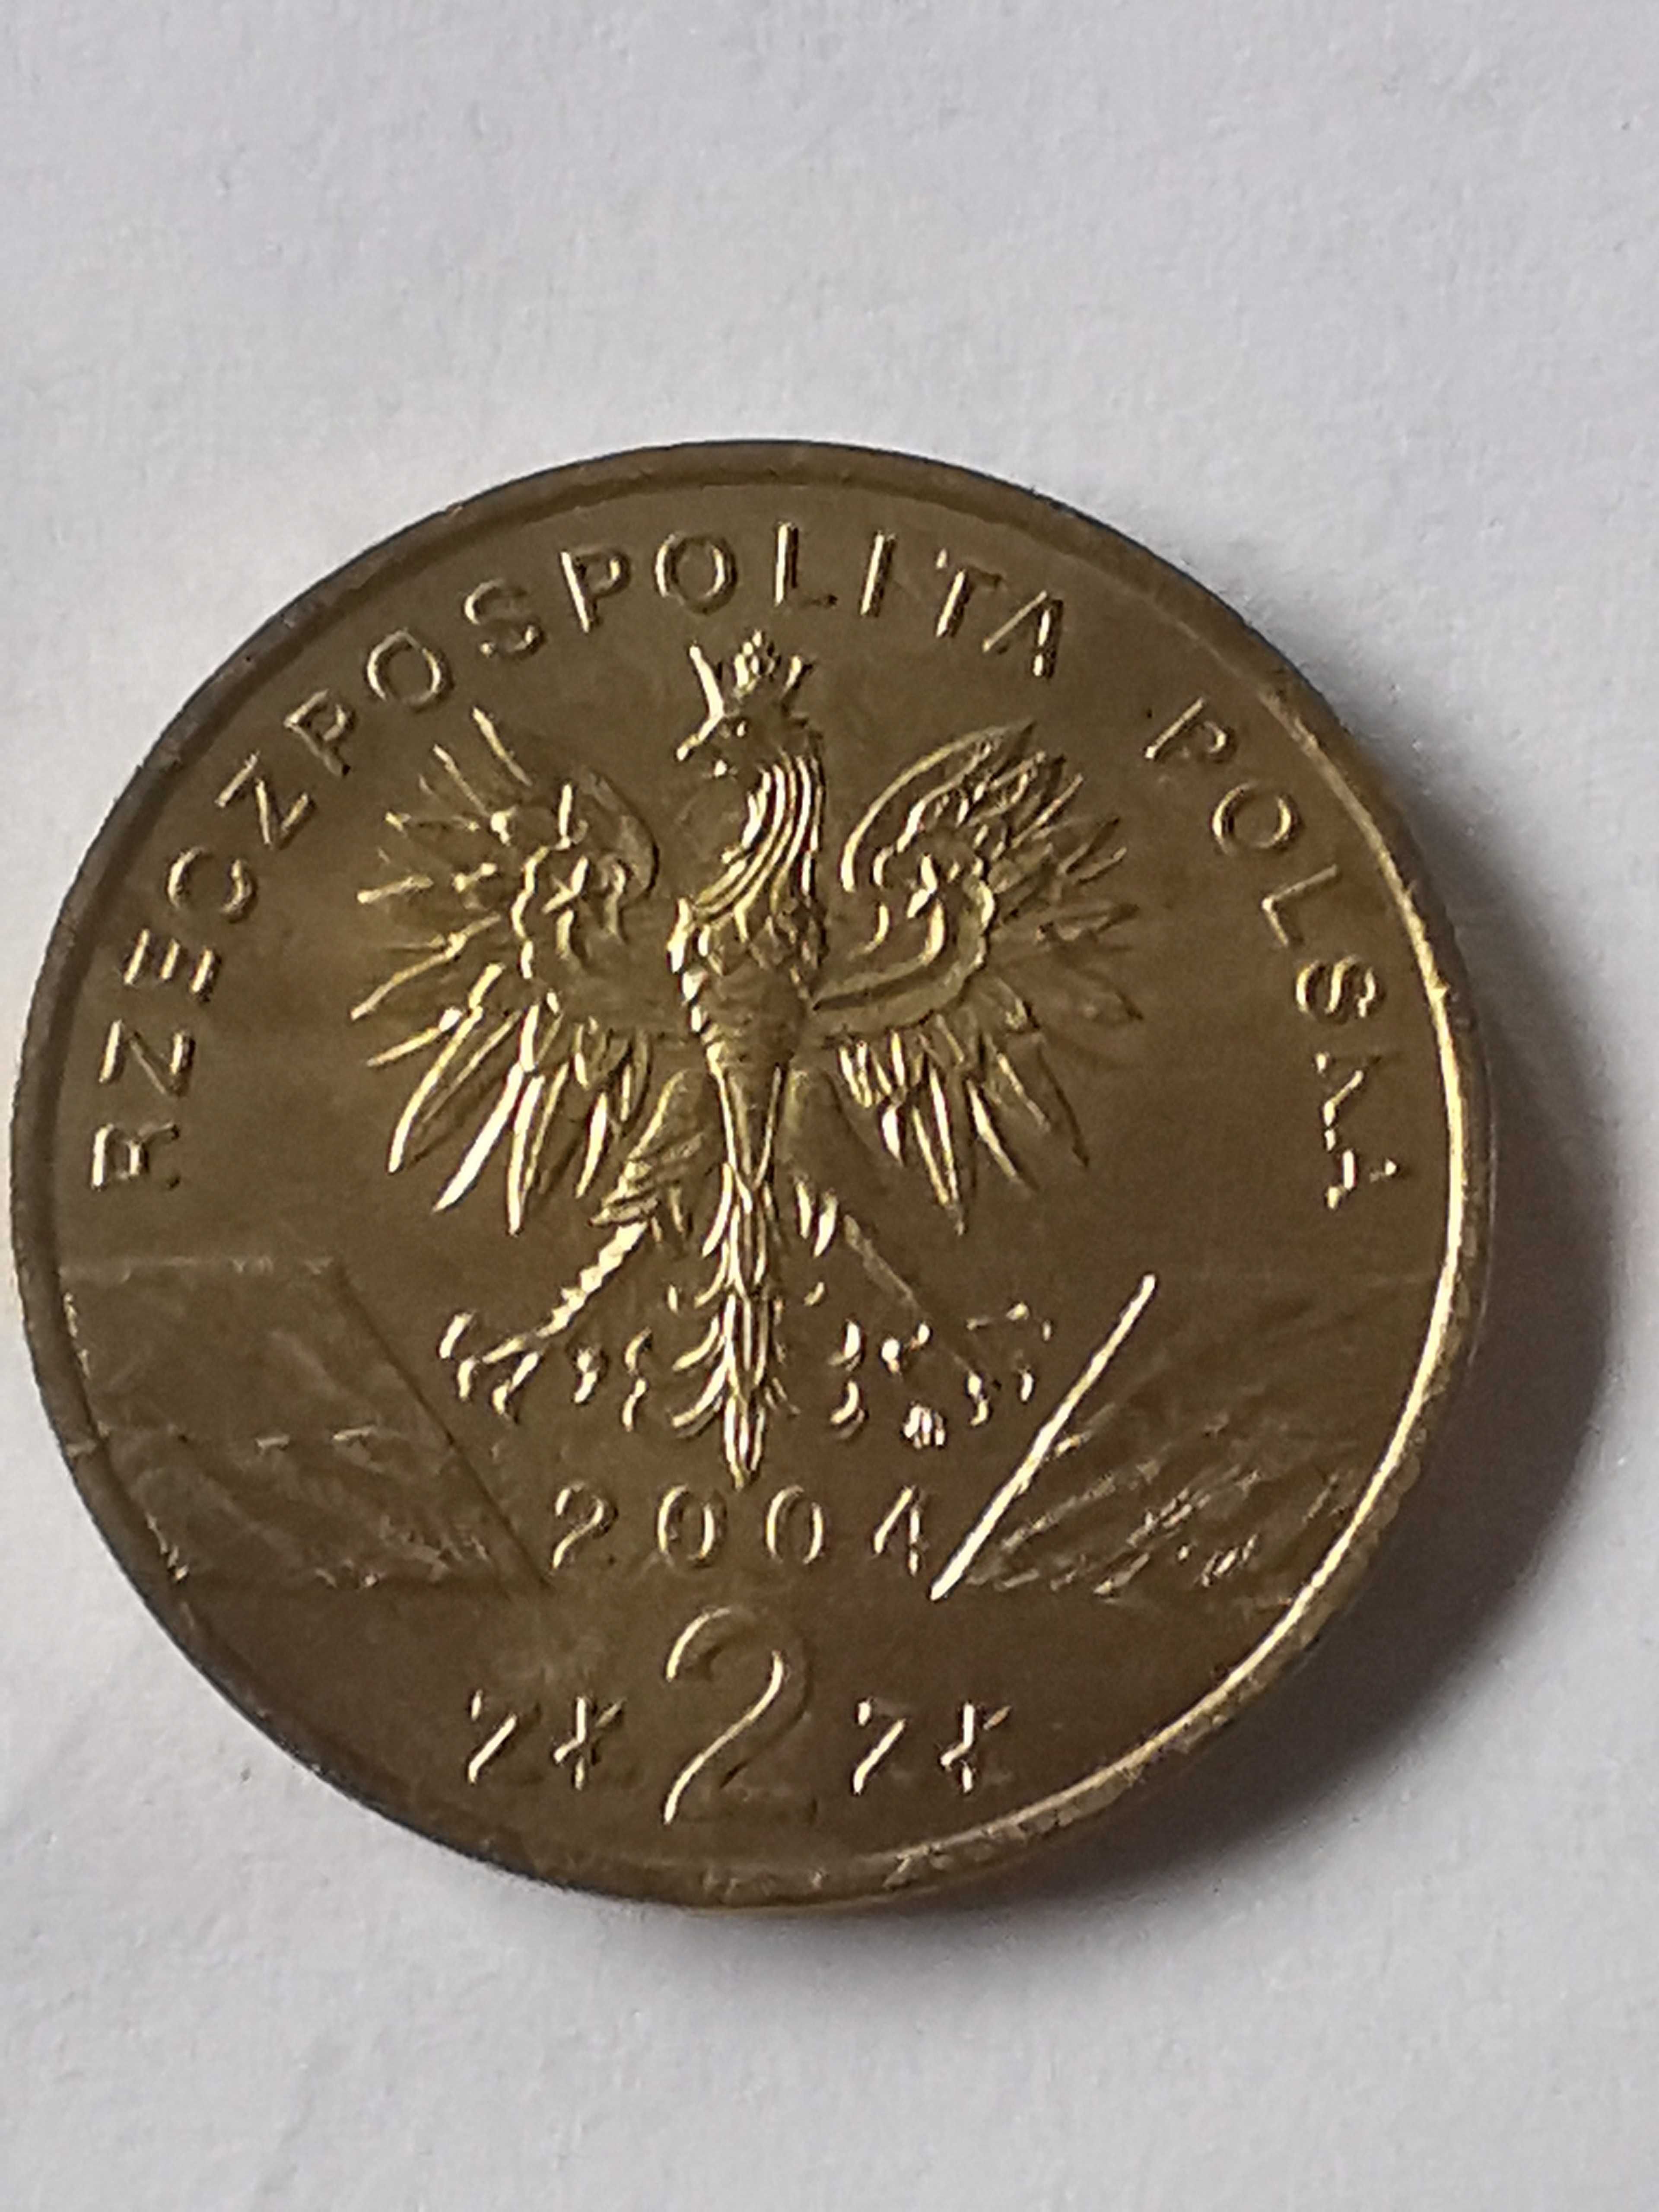 Moneta Morświn 2 zł 2004r.